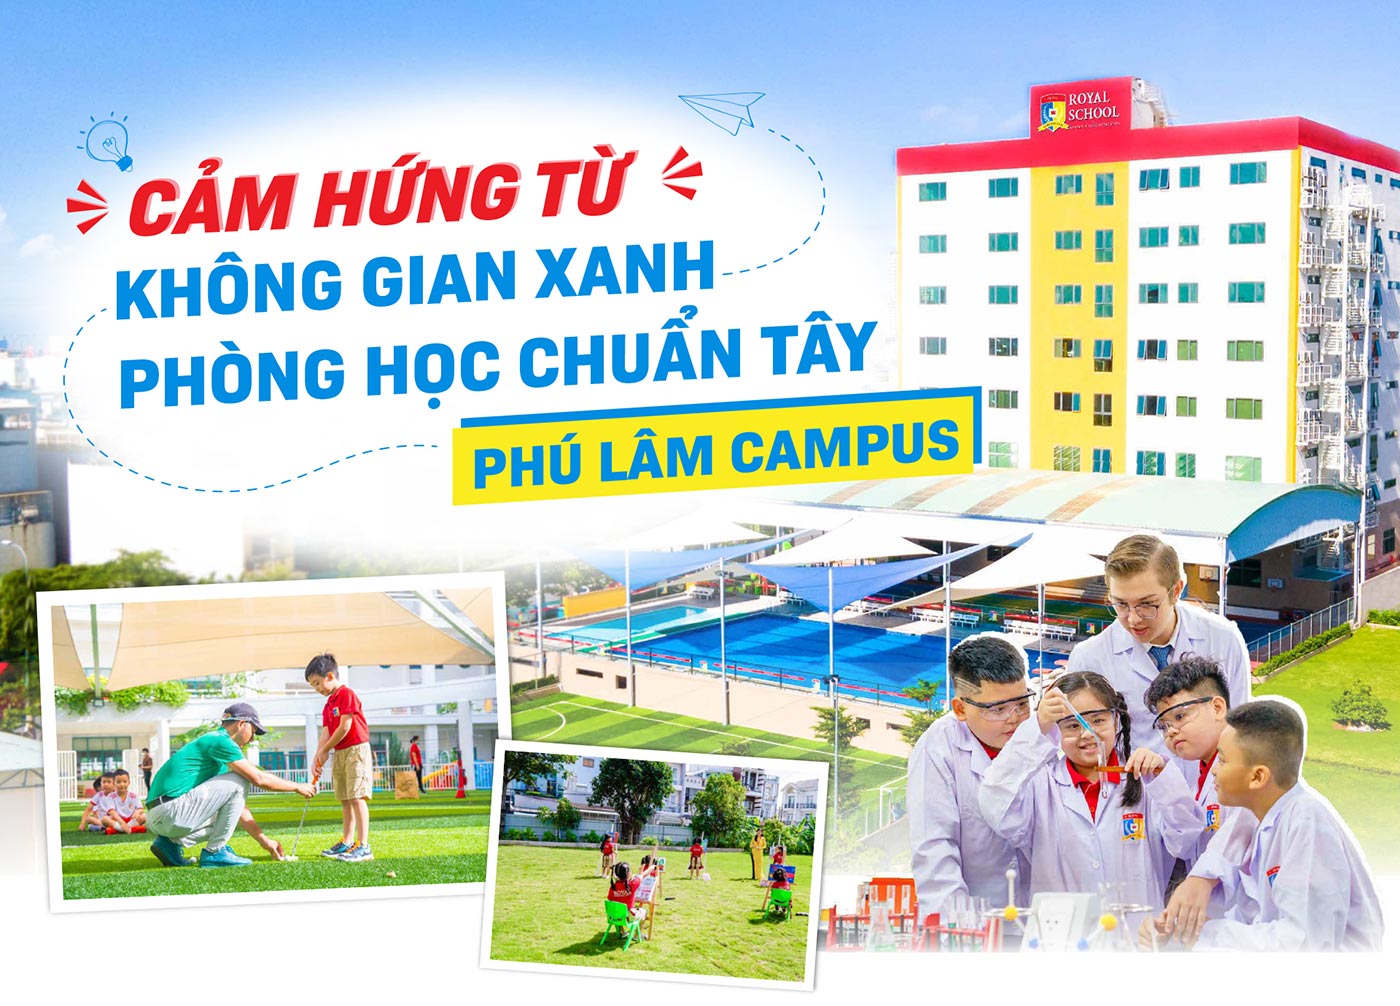 Cảm hứng từ không gian xanh, phòng học chuẩn Tây Phú Lâm Campus - Ảnh 1